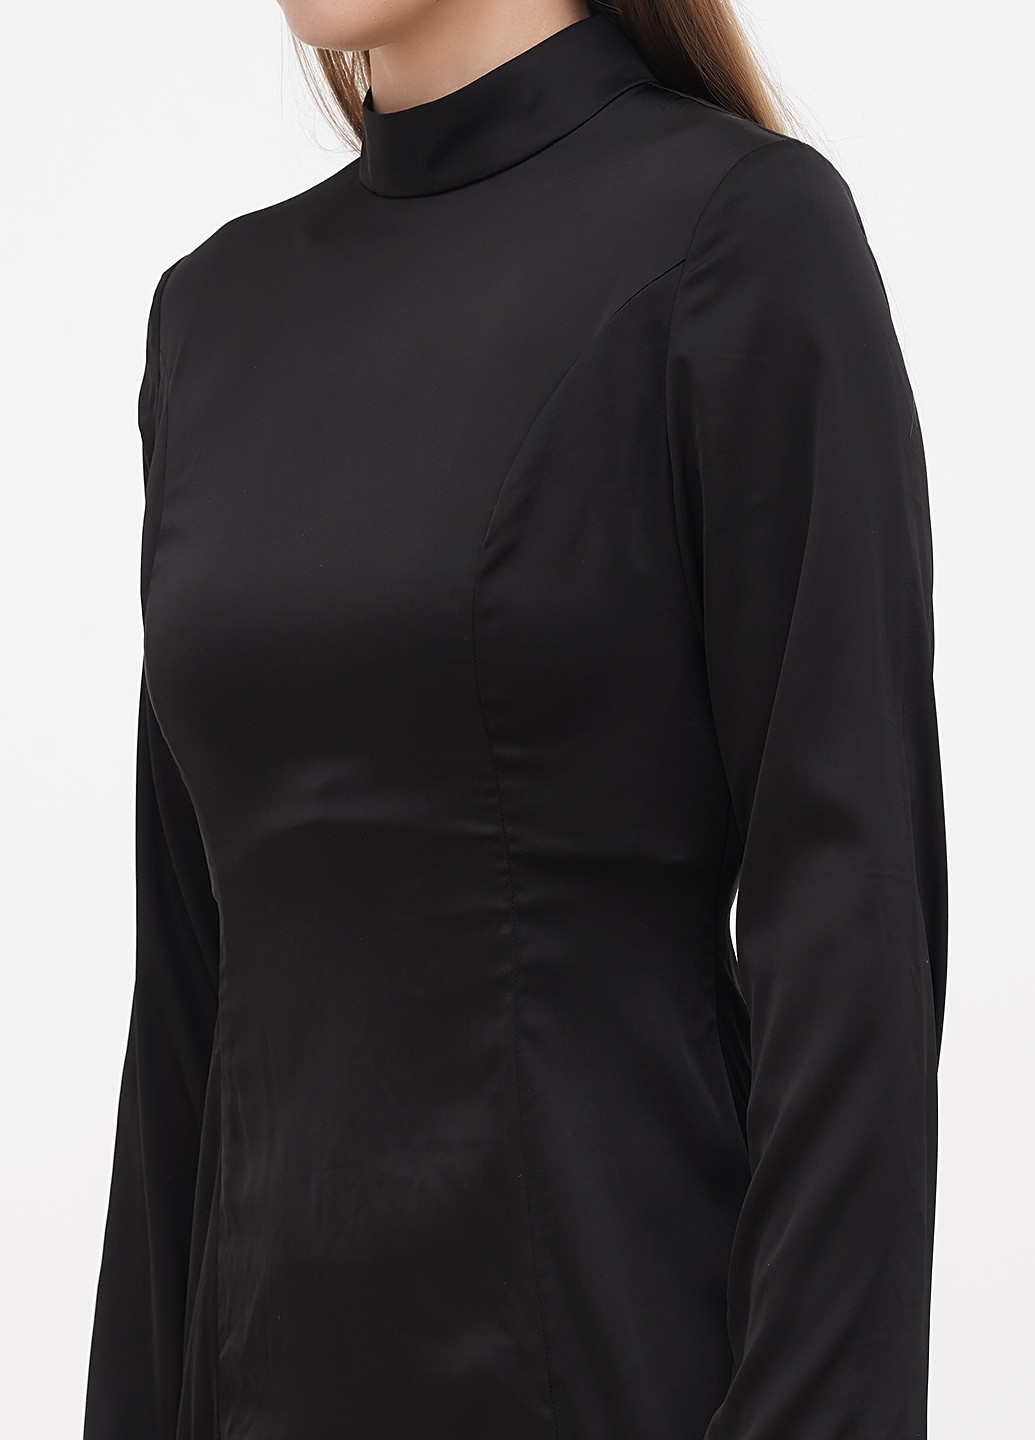 Черное коктейльное платье платье-водолазка, с открытой спиной Boohoo однотонное